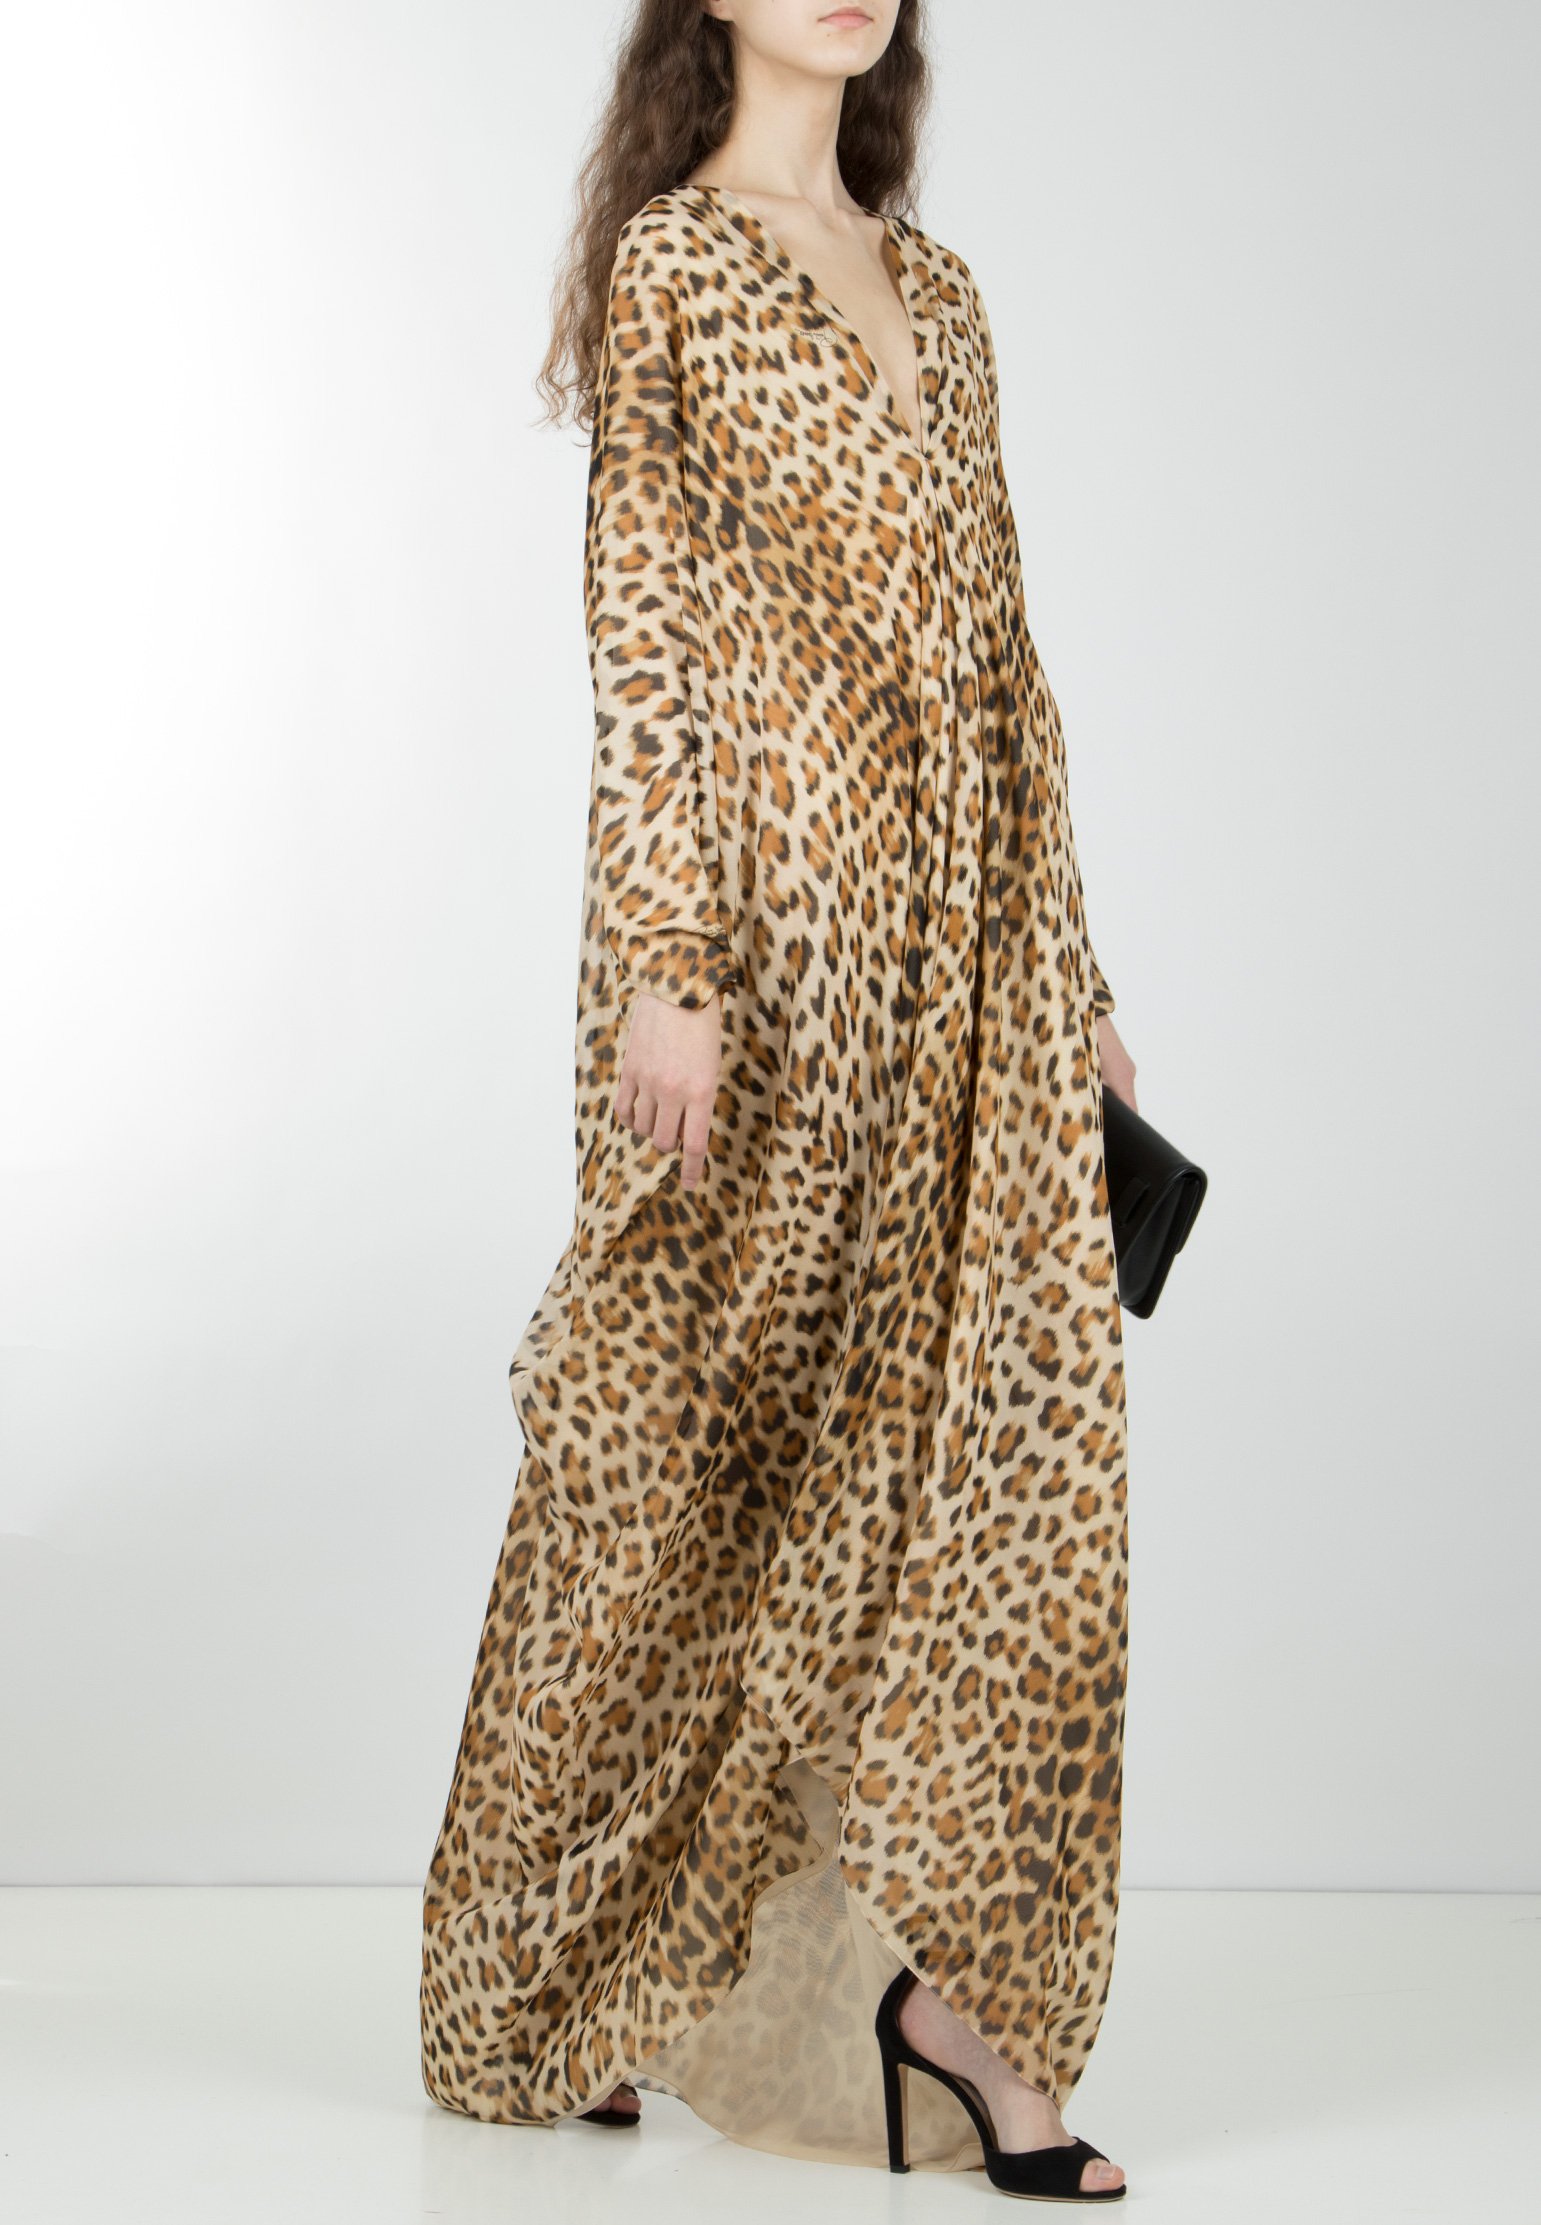 Леопардовое платье Роберто Кавалли